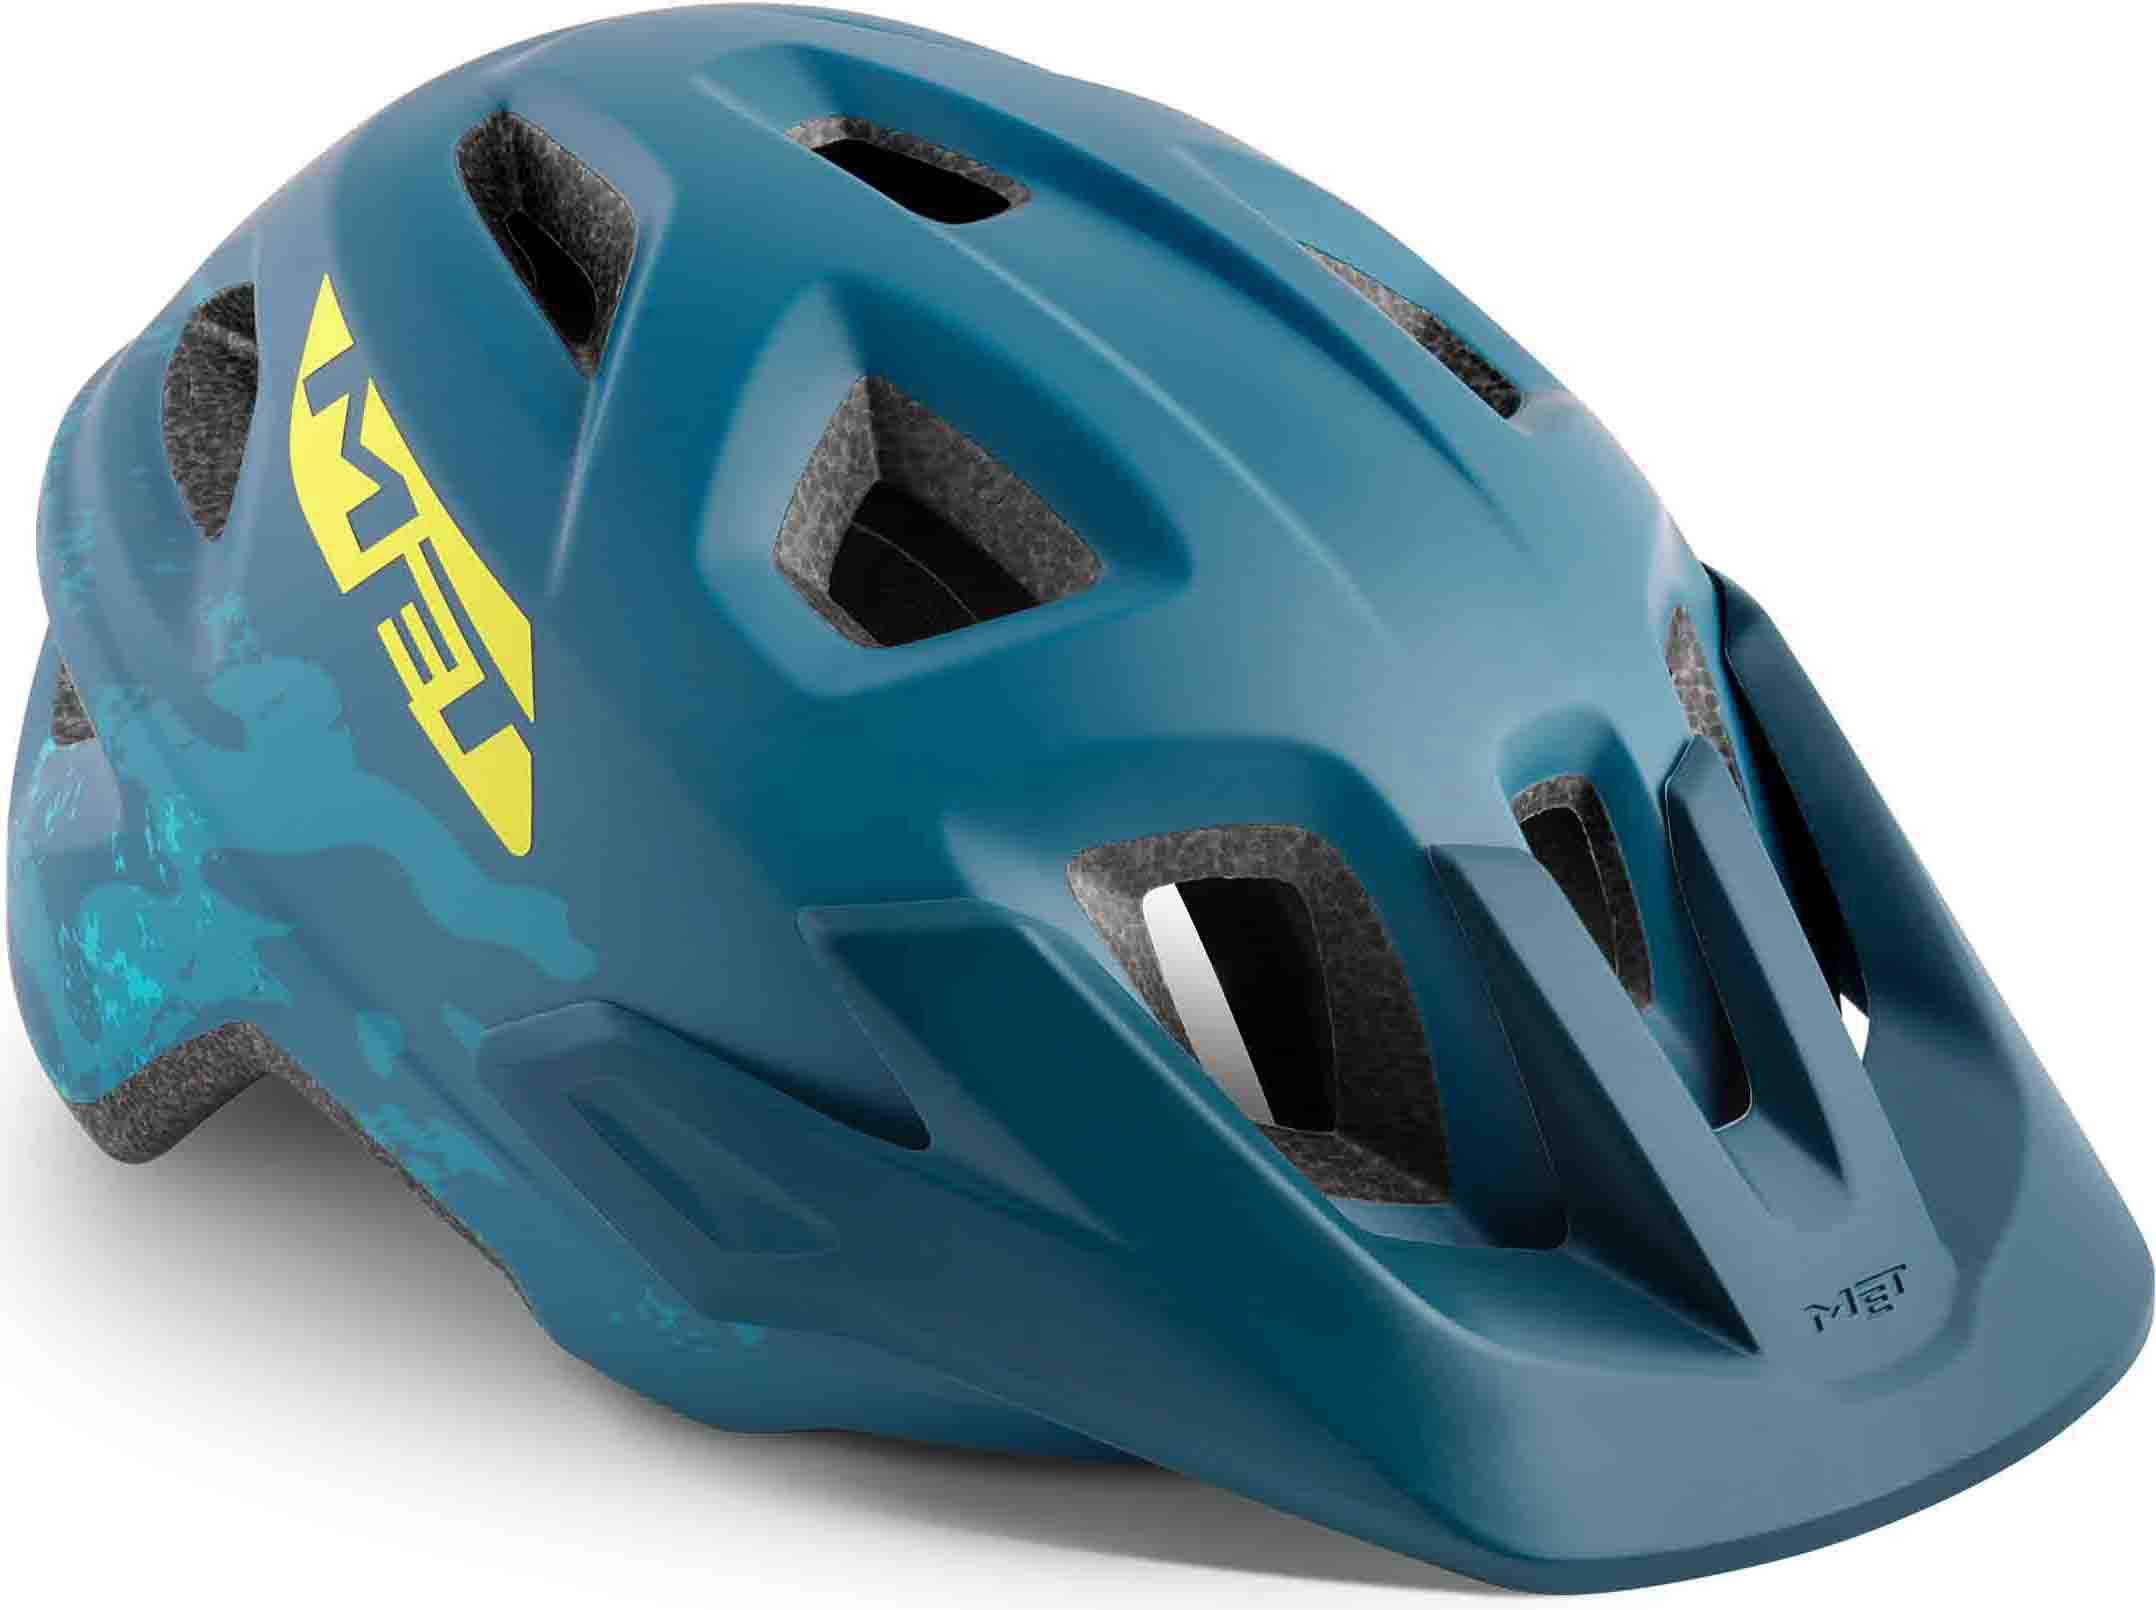 Met Eldar Youth Cycle Helmet (Mips) Blue Camo